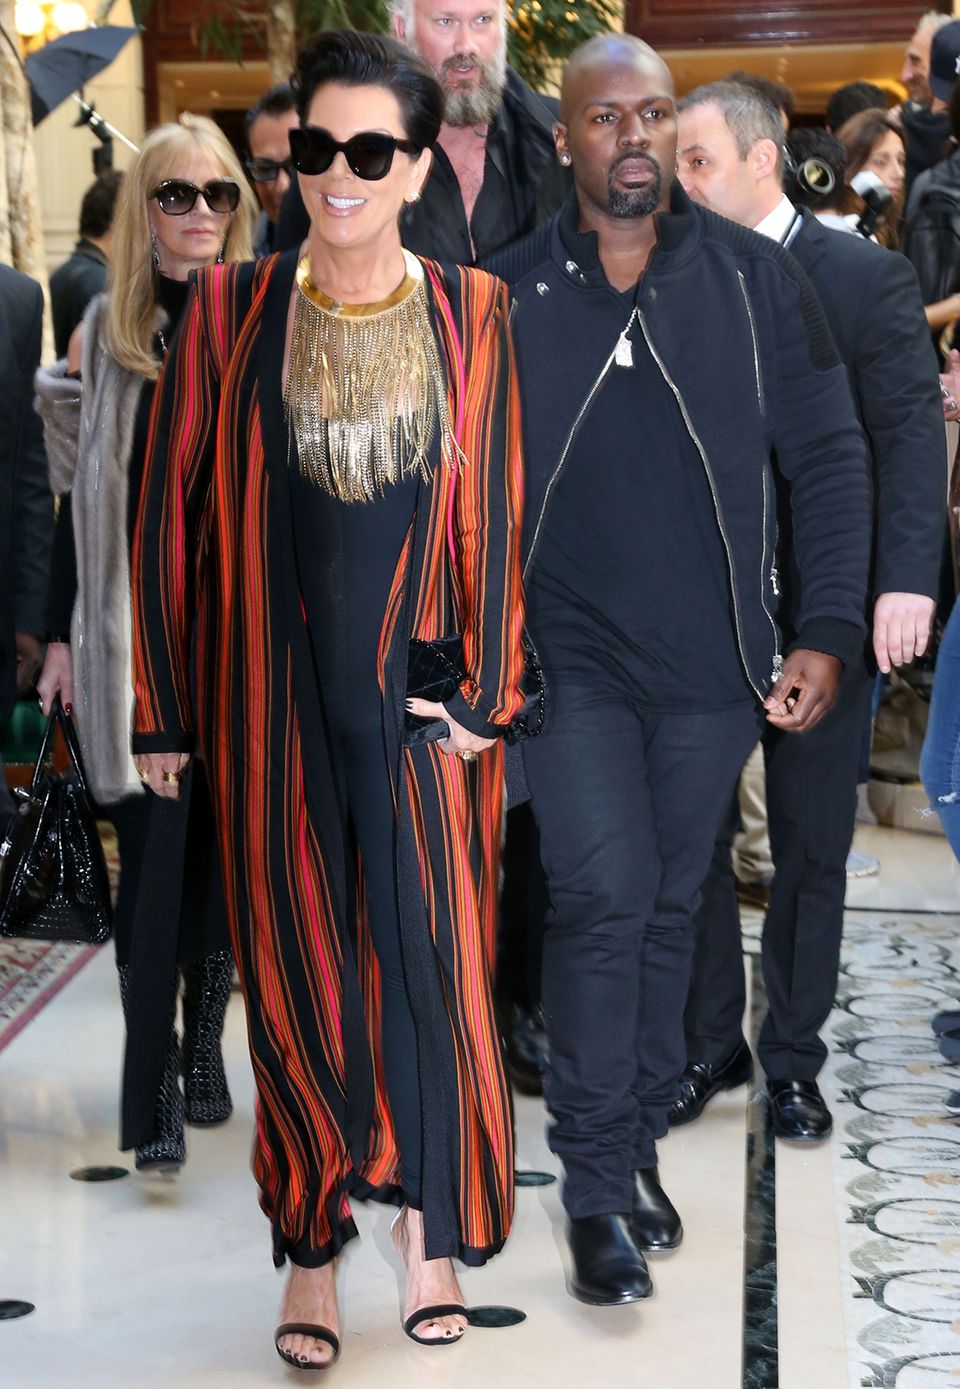 Oooops! Auch TV-Star Kris Jenner scheint sich in den farbenfrohen Mantel von Balmain verguckt zu haben und trägt ihn prompt als stolze Model-Mutter bei der Show.